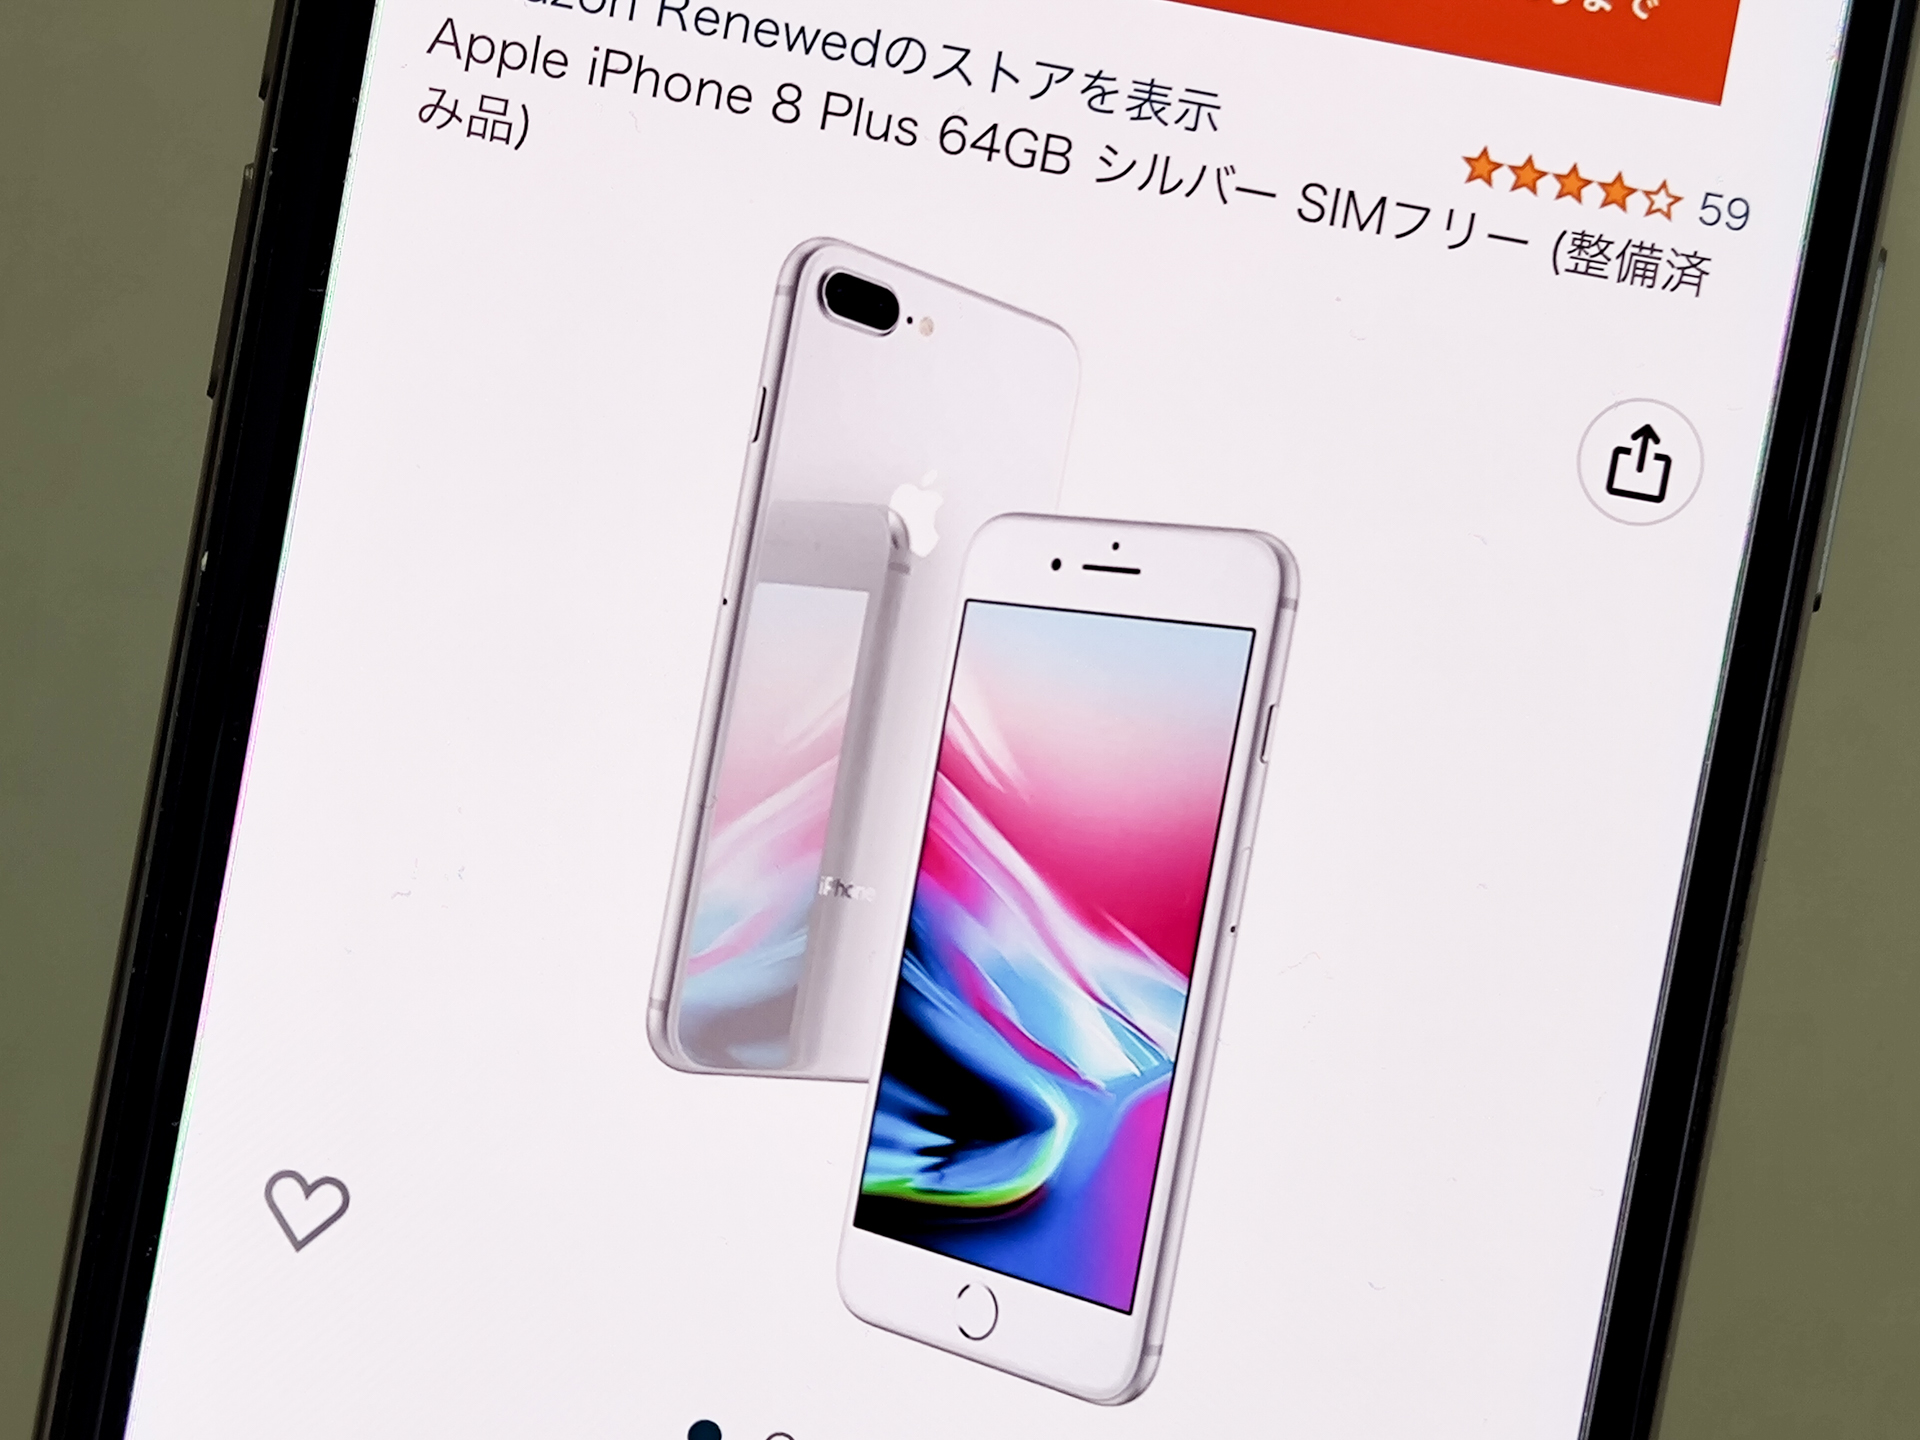 「iPhone 8 Plus」（64GB）の整備済み品がセール価格に【Amazon